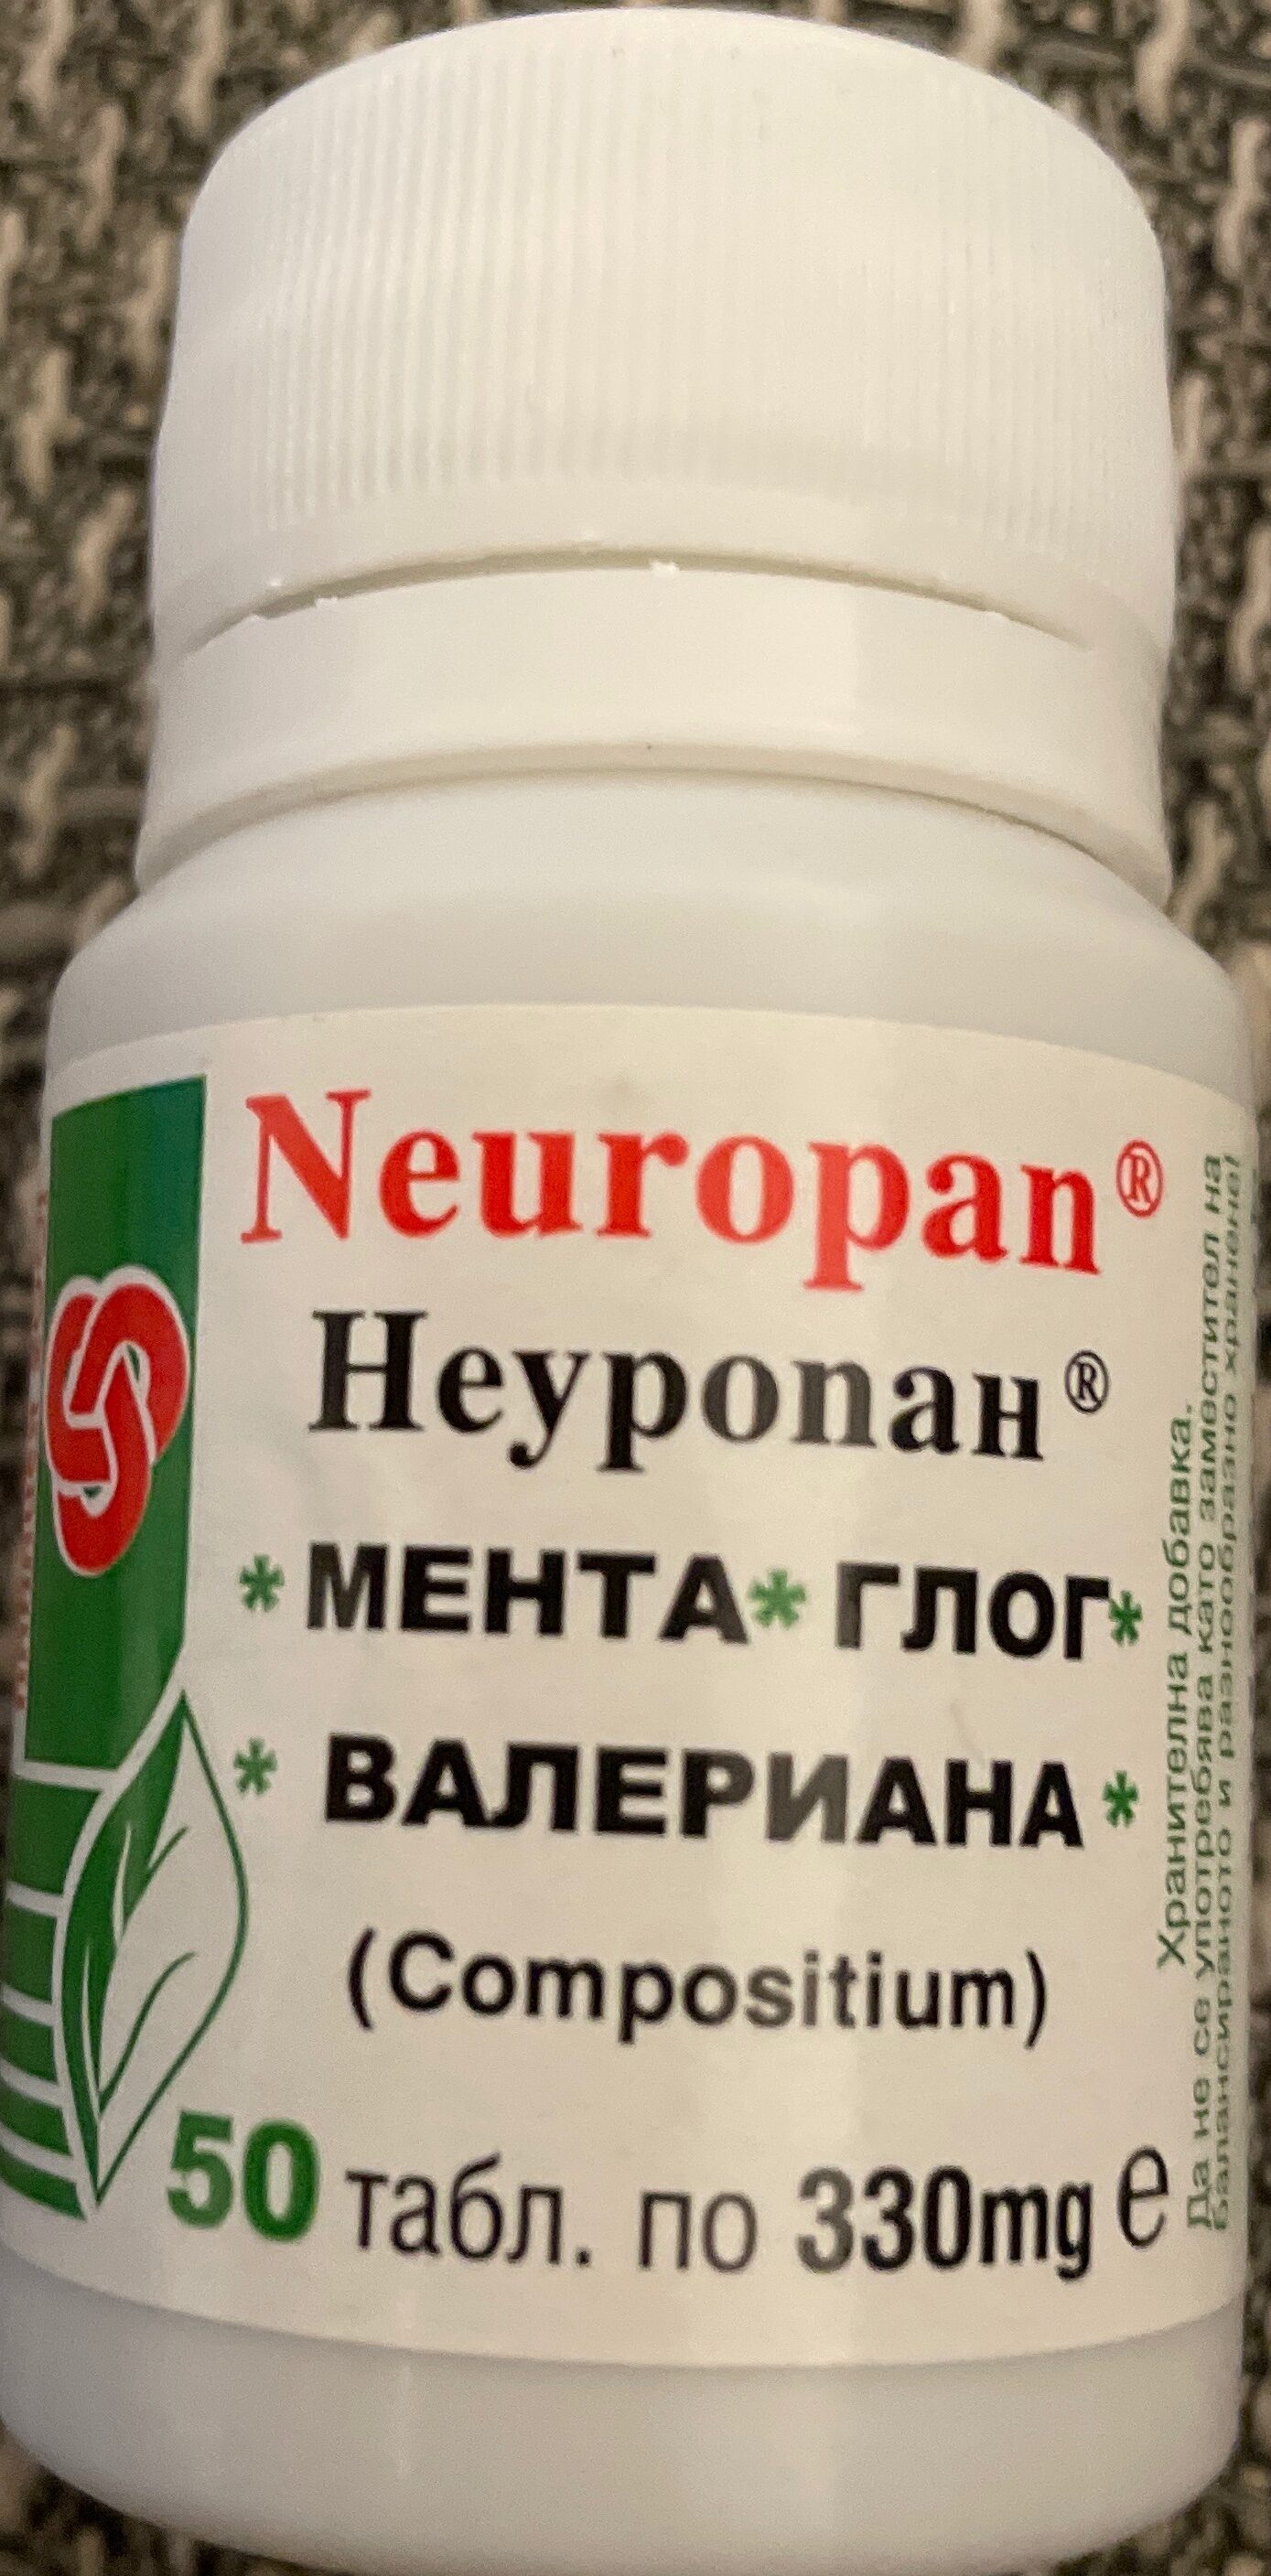 Neuropan - Product - de